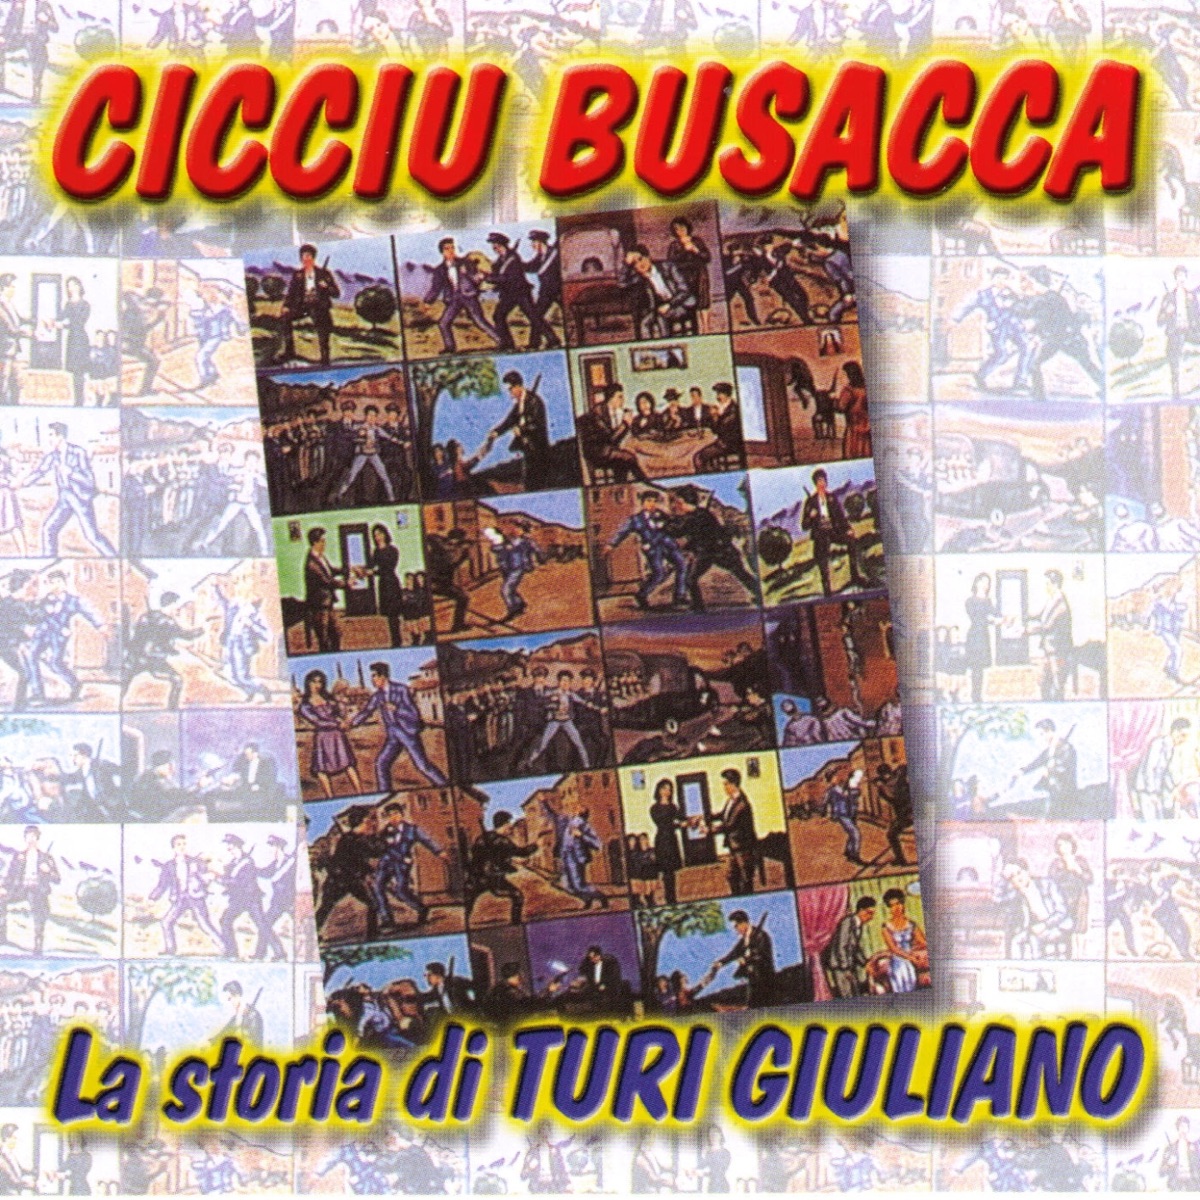 La storia di Giovanni Accetta by Cicciu Busacca on Apple Music